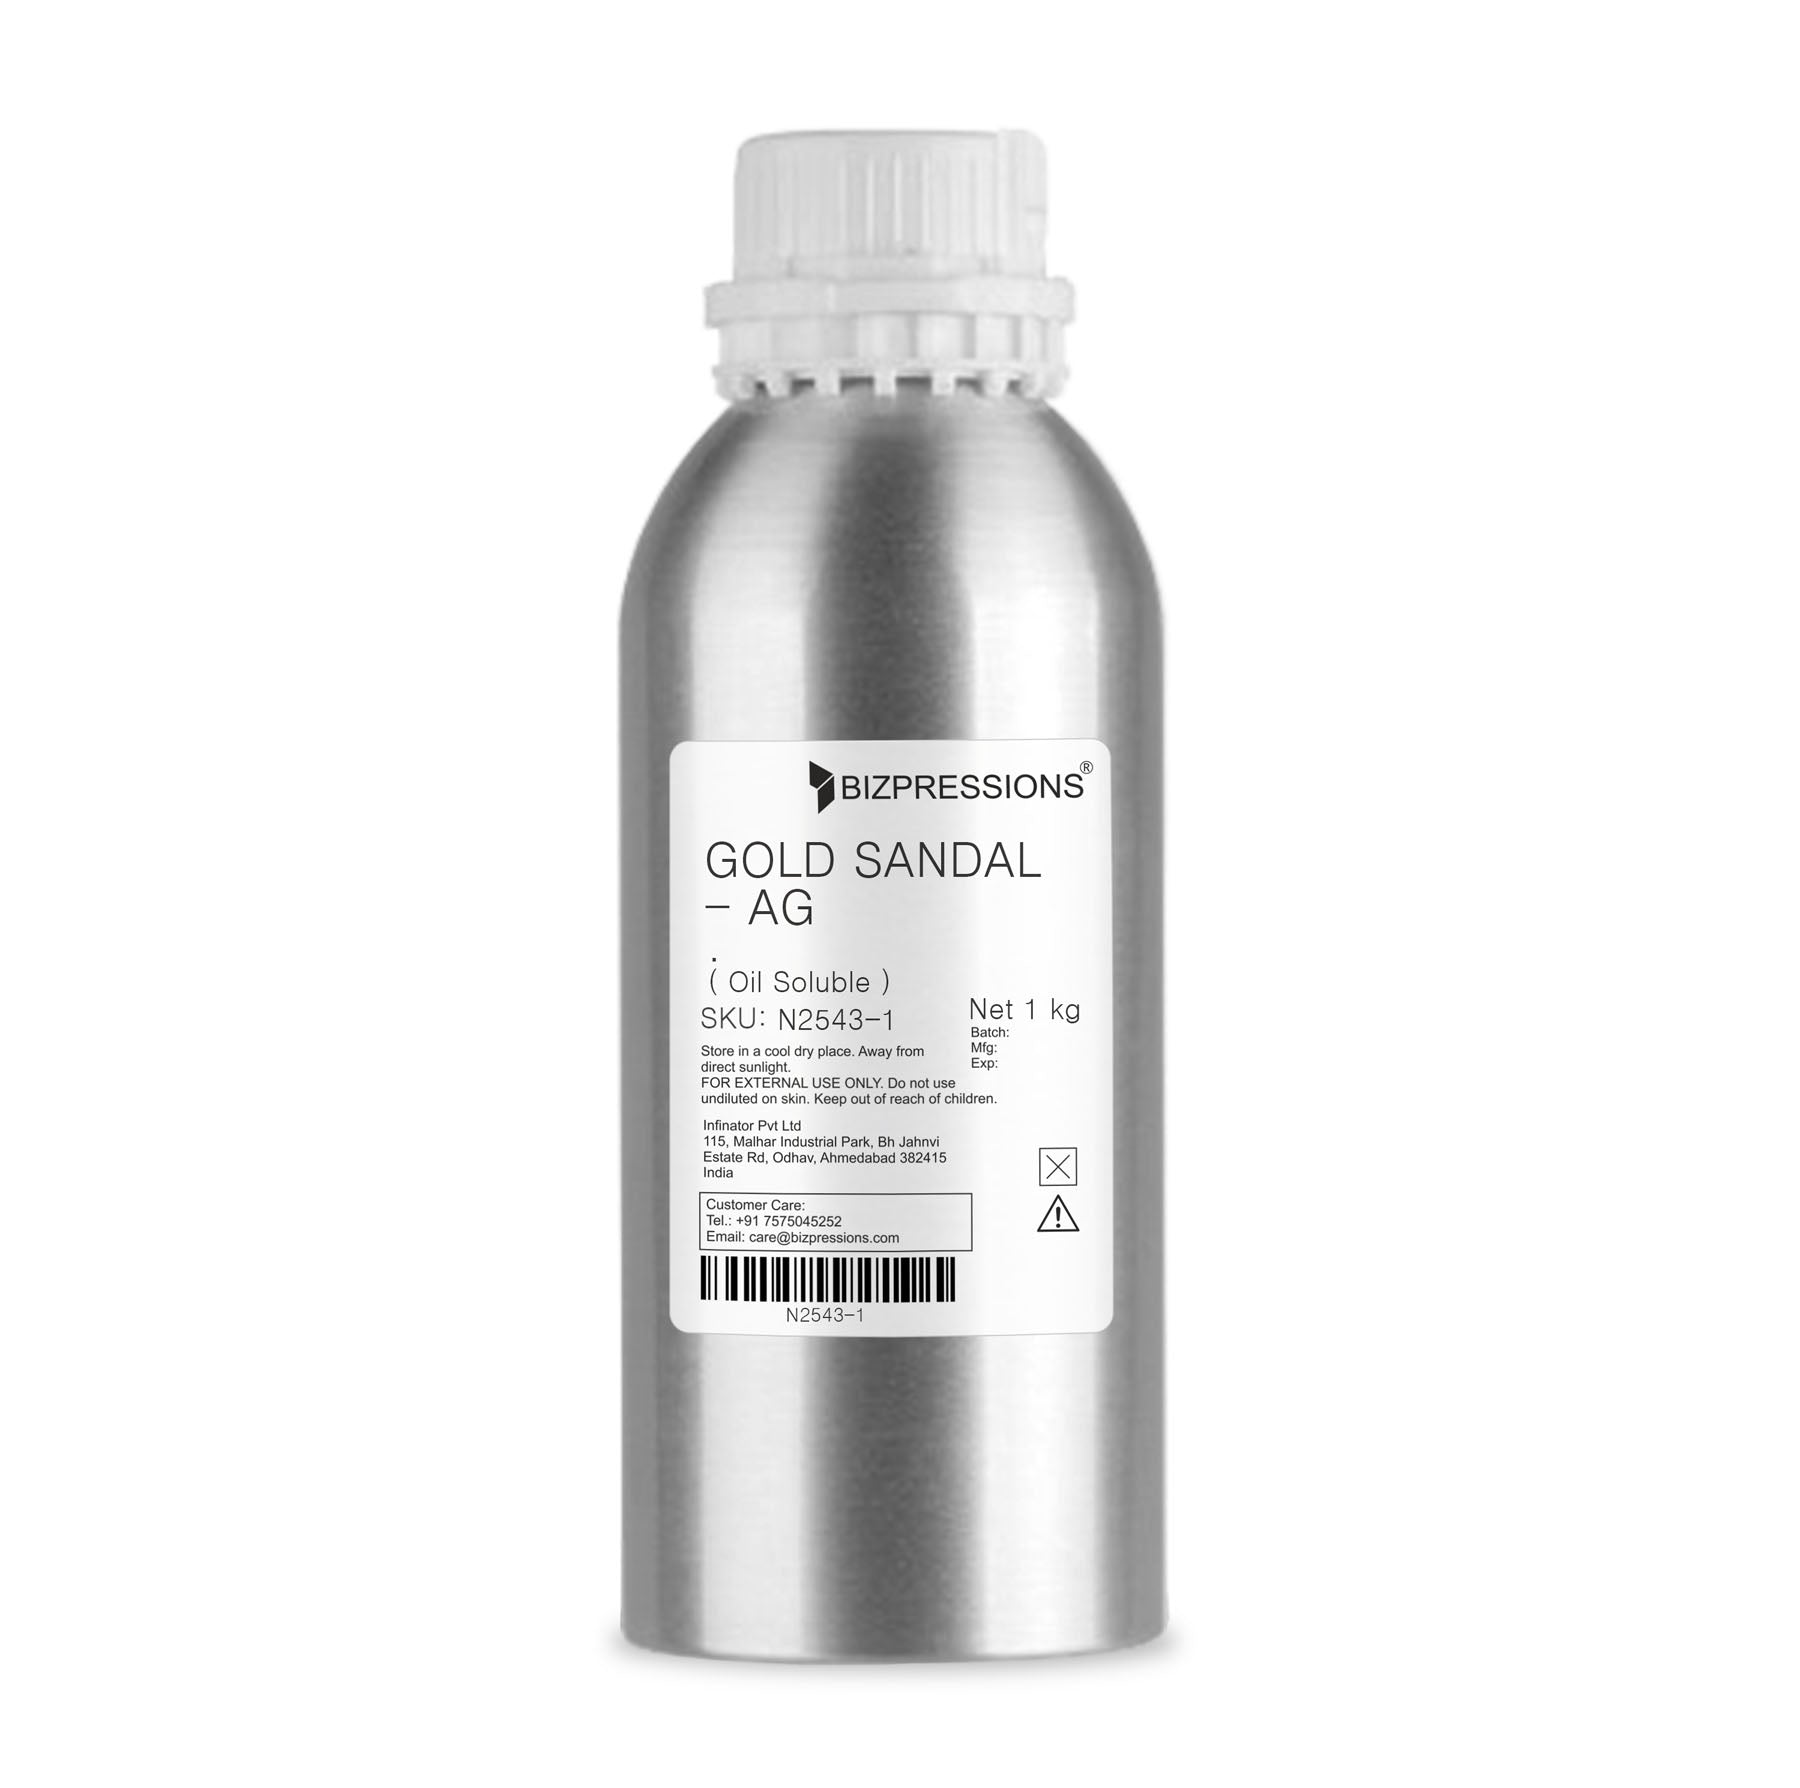 GOLD SANDAL - AG - Fragrance ( Oil Soluble ) - 1 kg